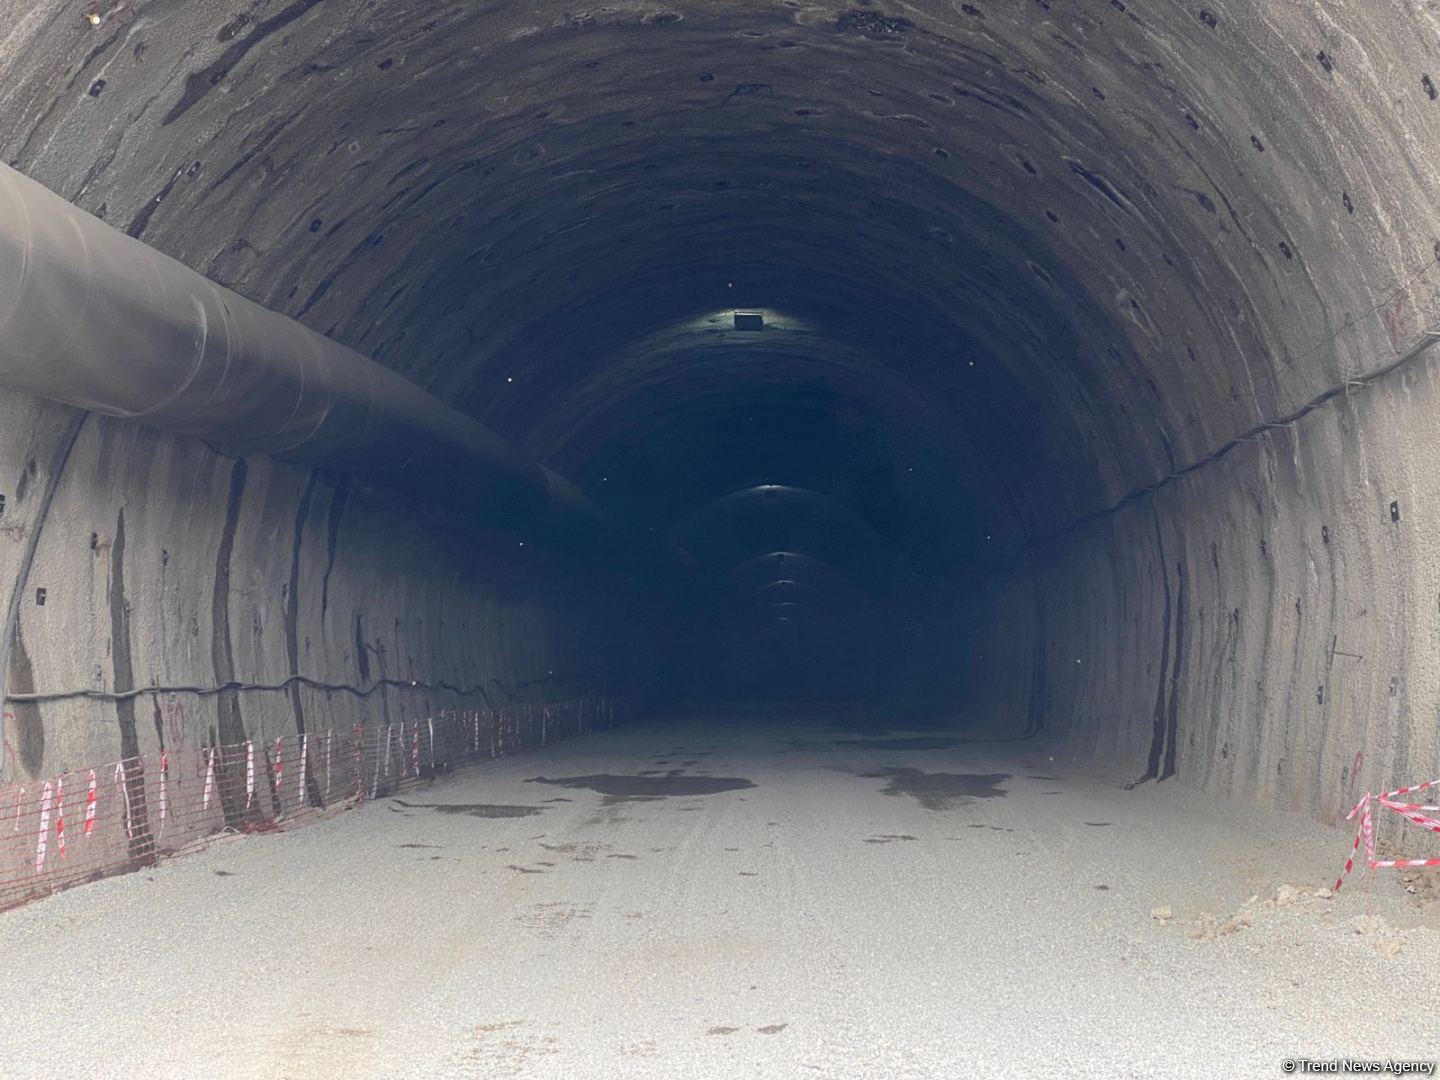 Laçın Hava Limanının giriş tuneli 2400 metr olacaq - Eyyub Hüseynov (FOTO)